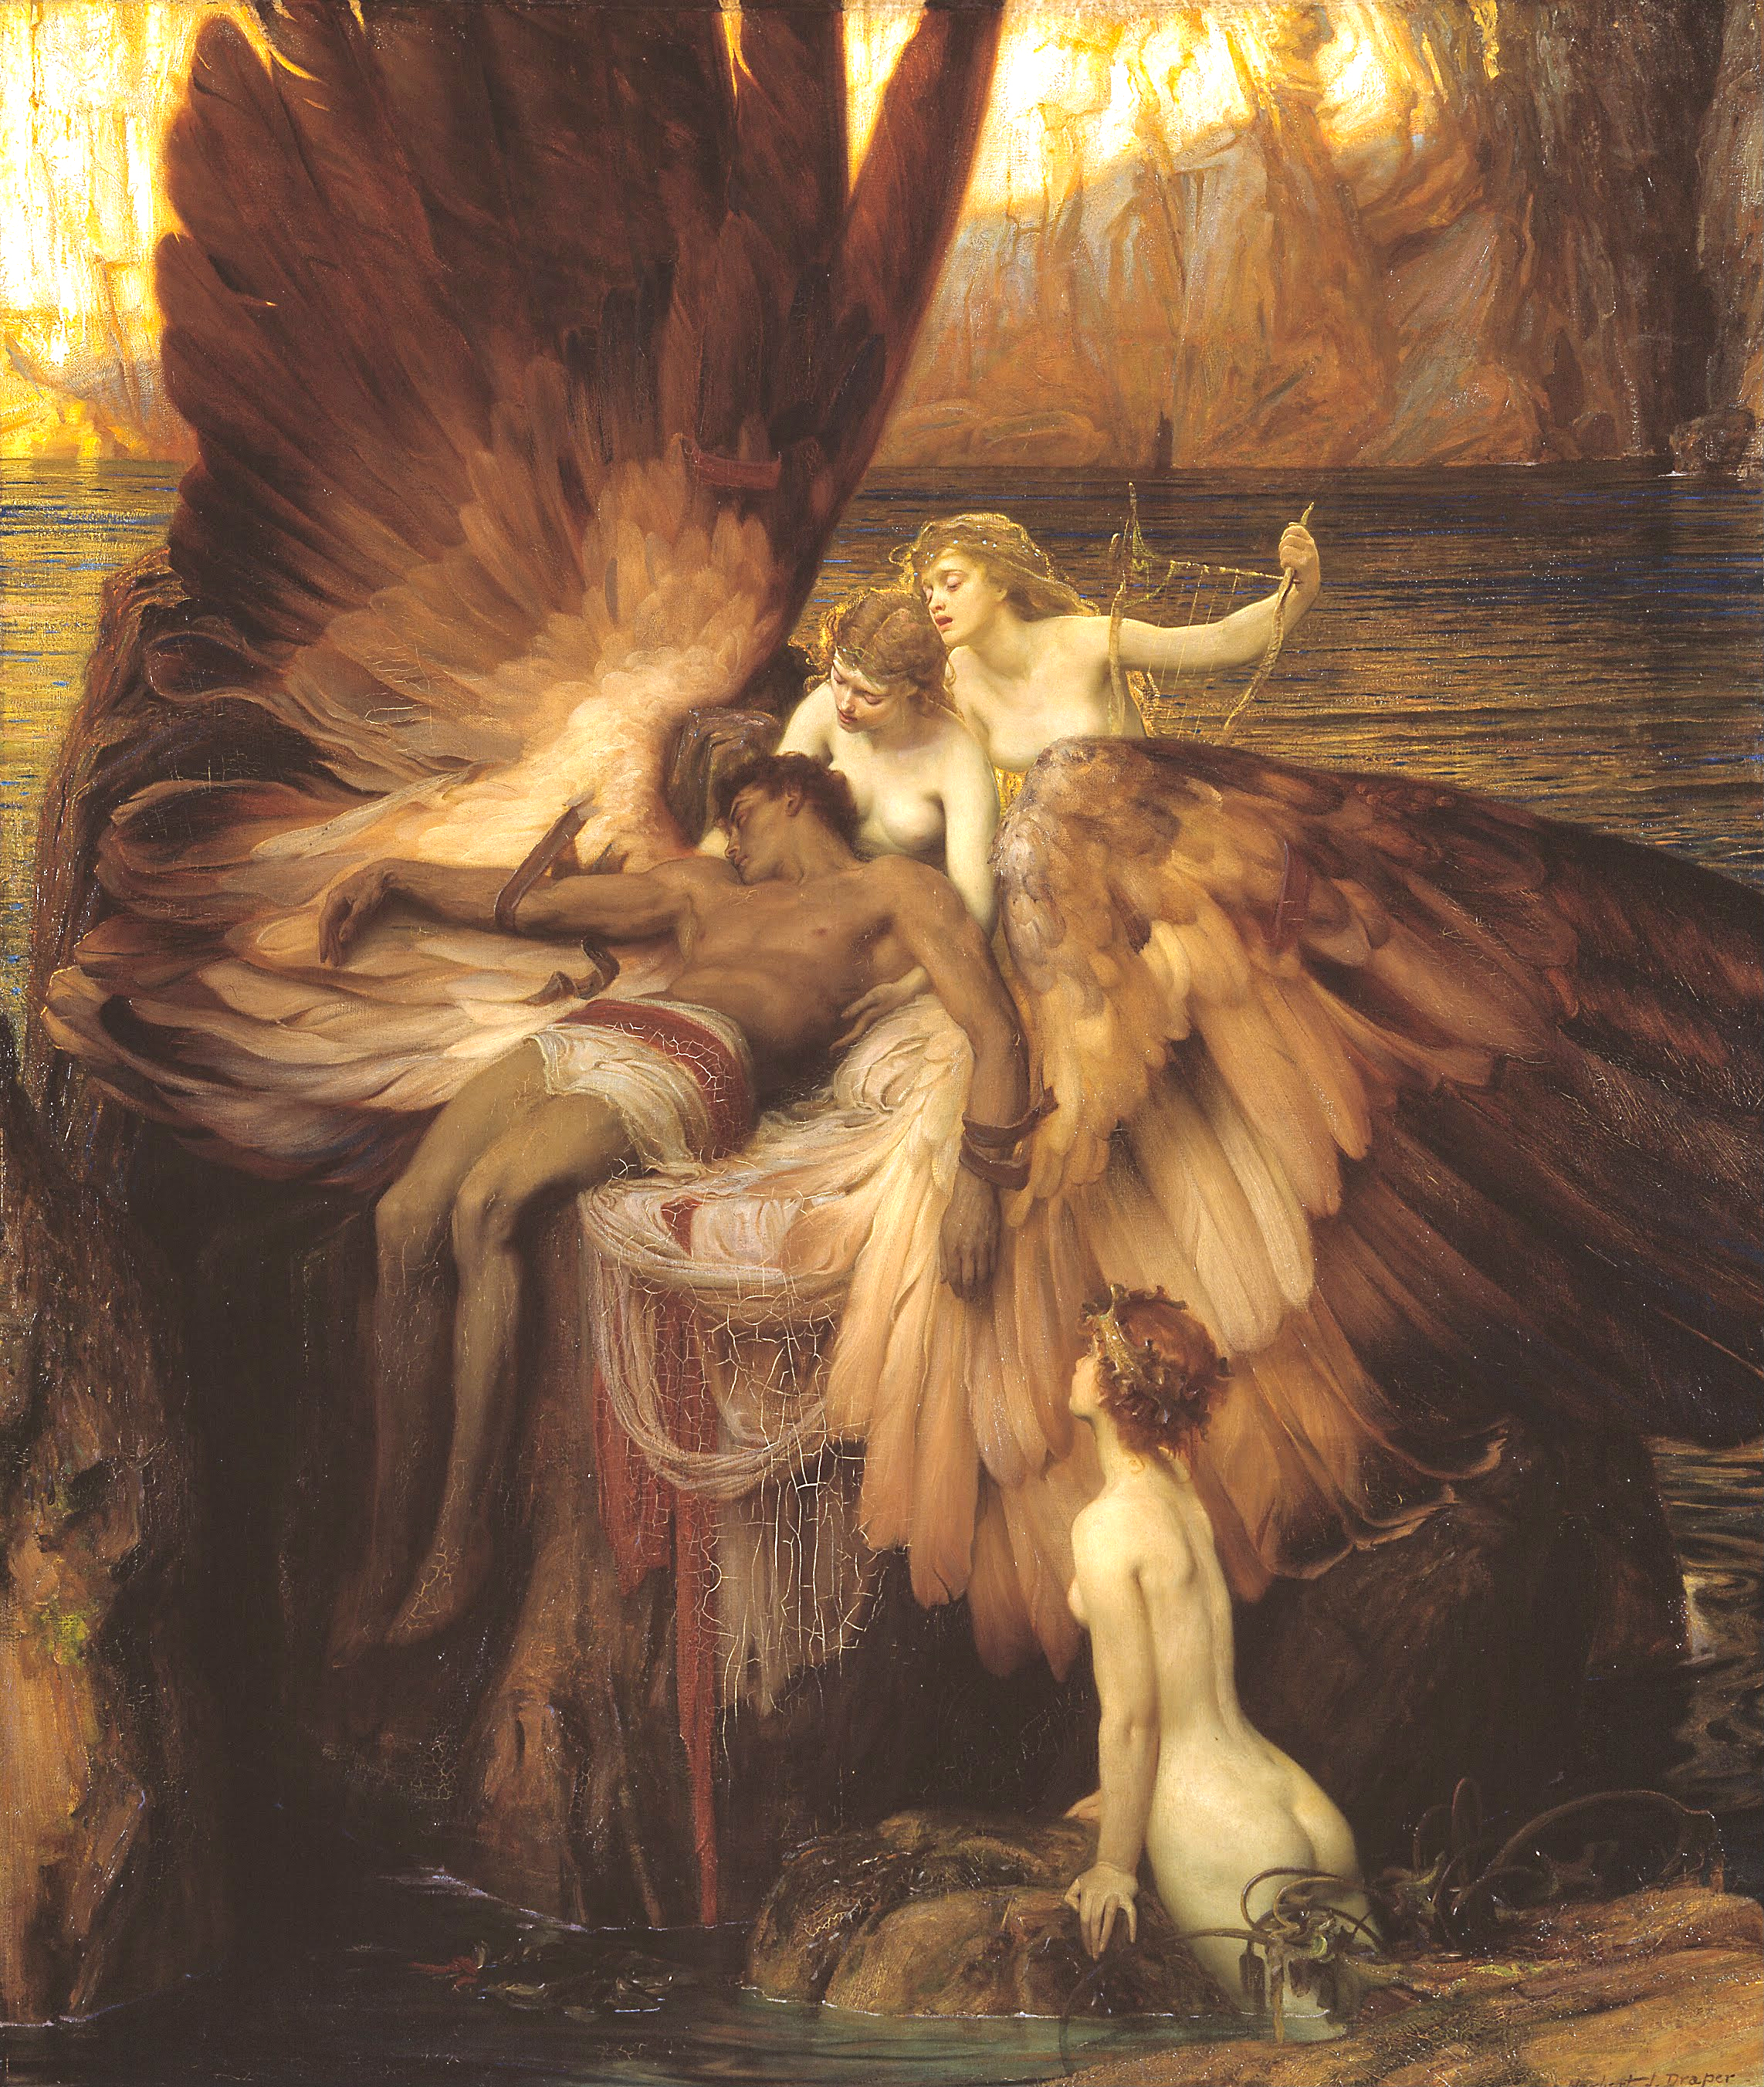 Оплакивание Икара by Herbert James Draper - 1898 - 182 x 155 см 